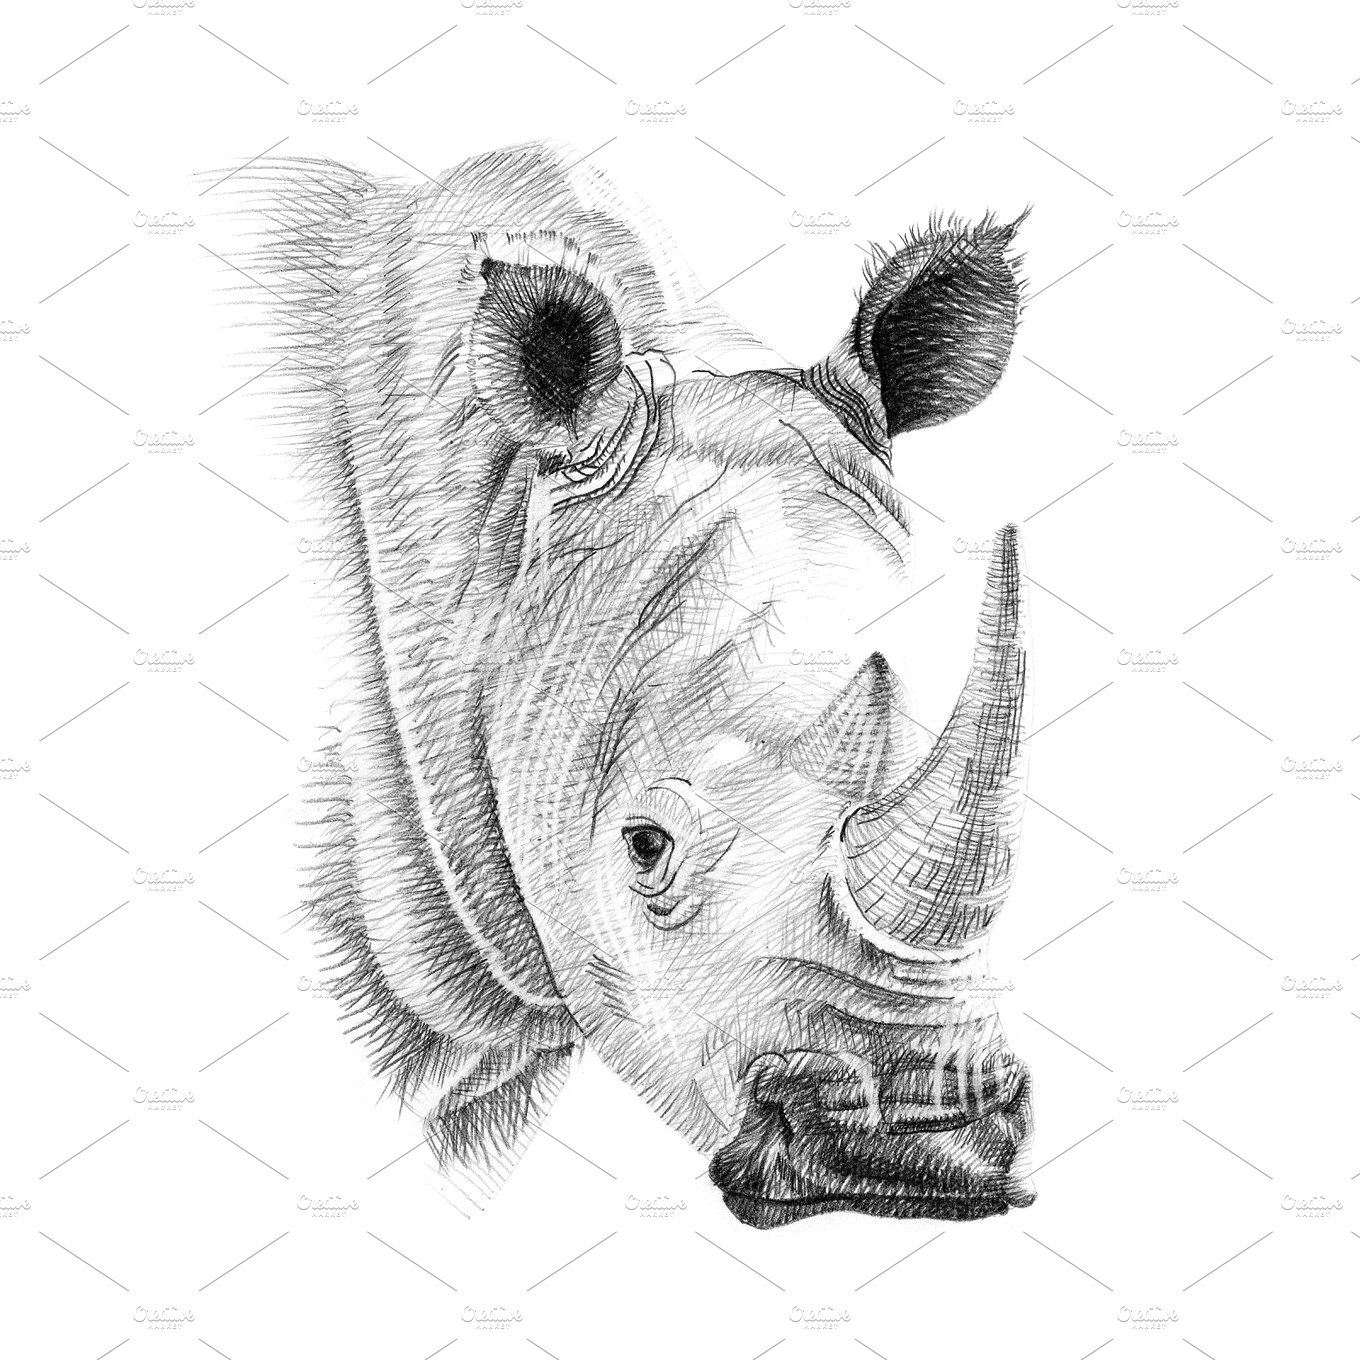 手工绘制的犀牛画像 Portrait of rhino dr